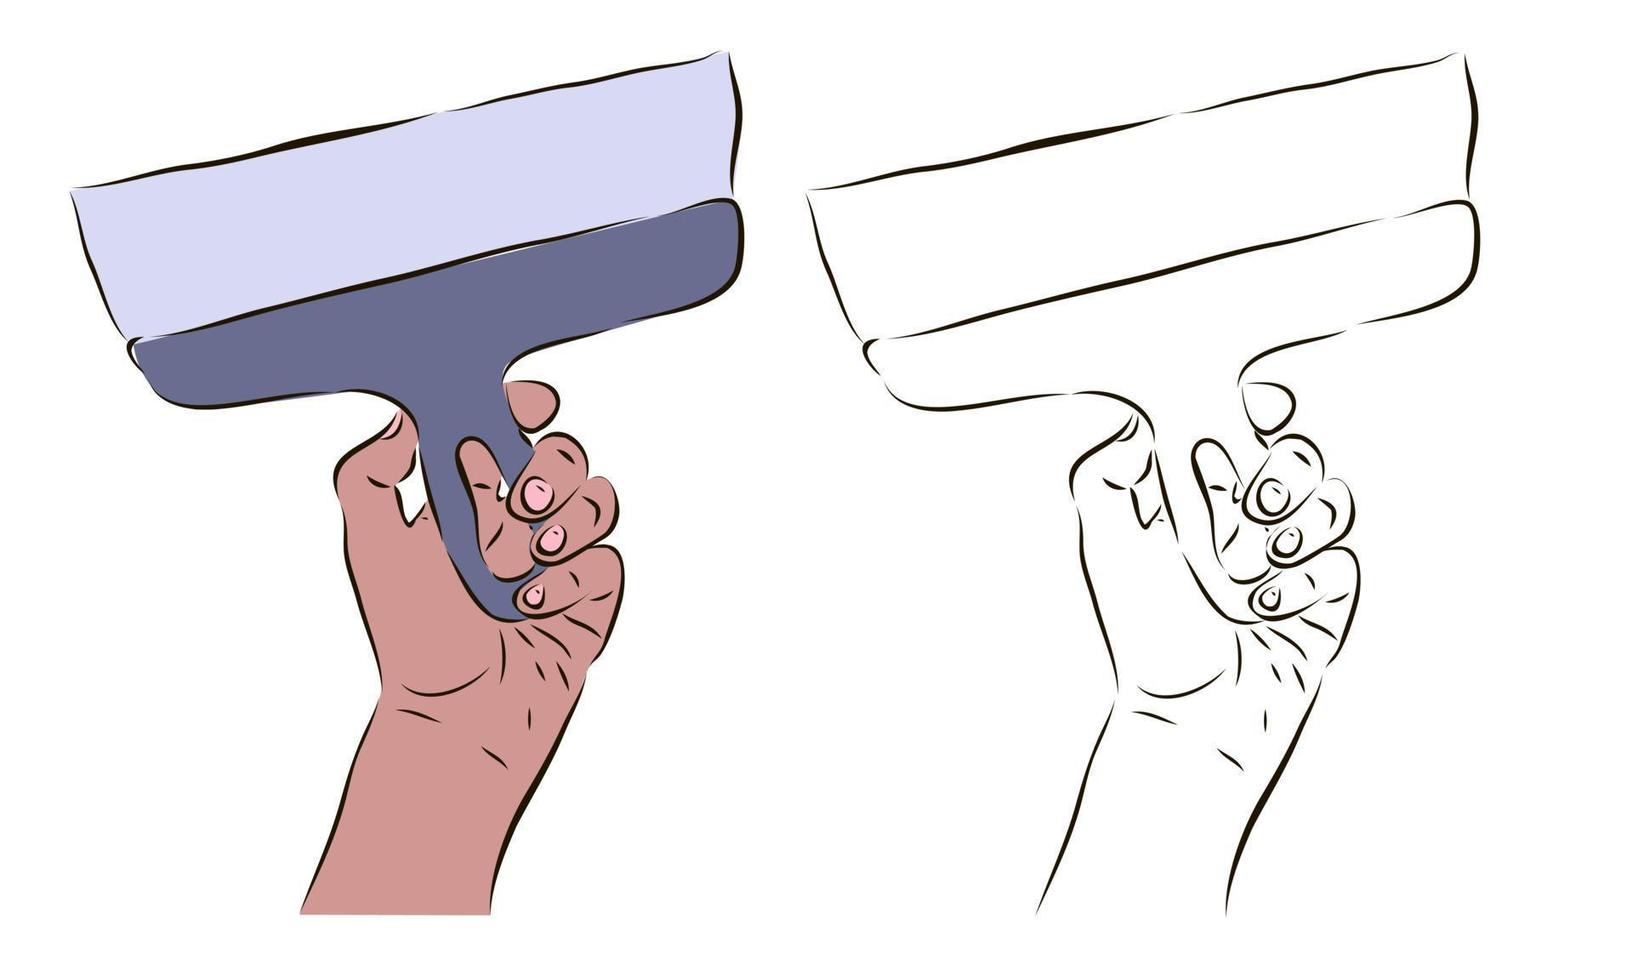 la mano del trabajador sostiene una espátula. el concepto de trabajar con una espátula. vector